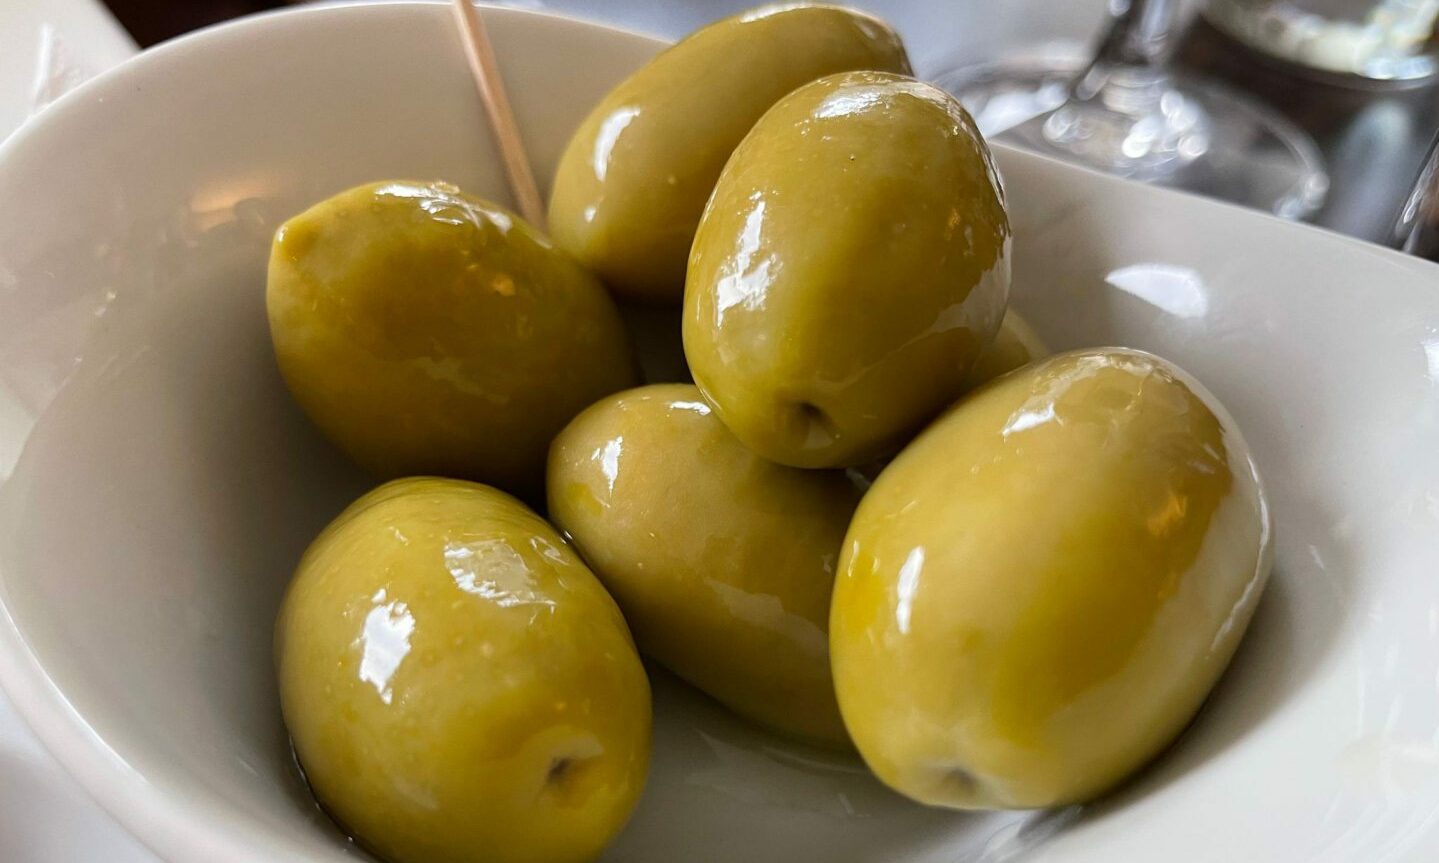 Olives at Poldino's